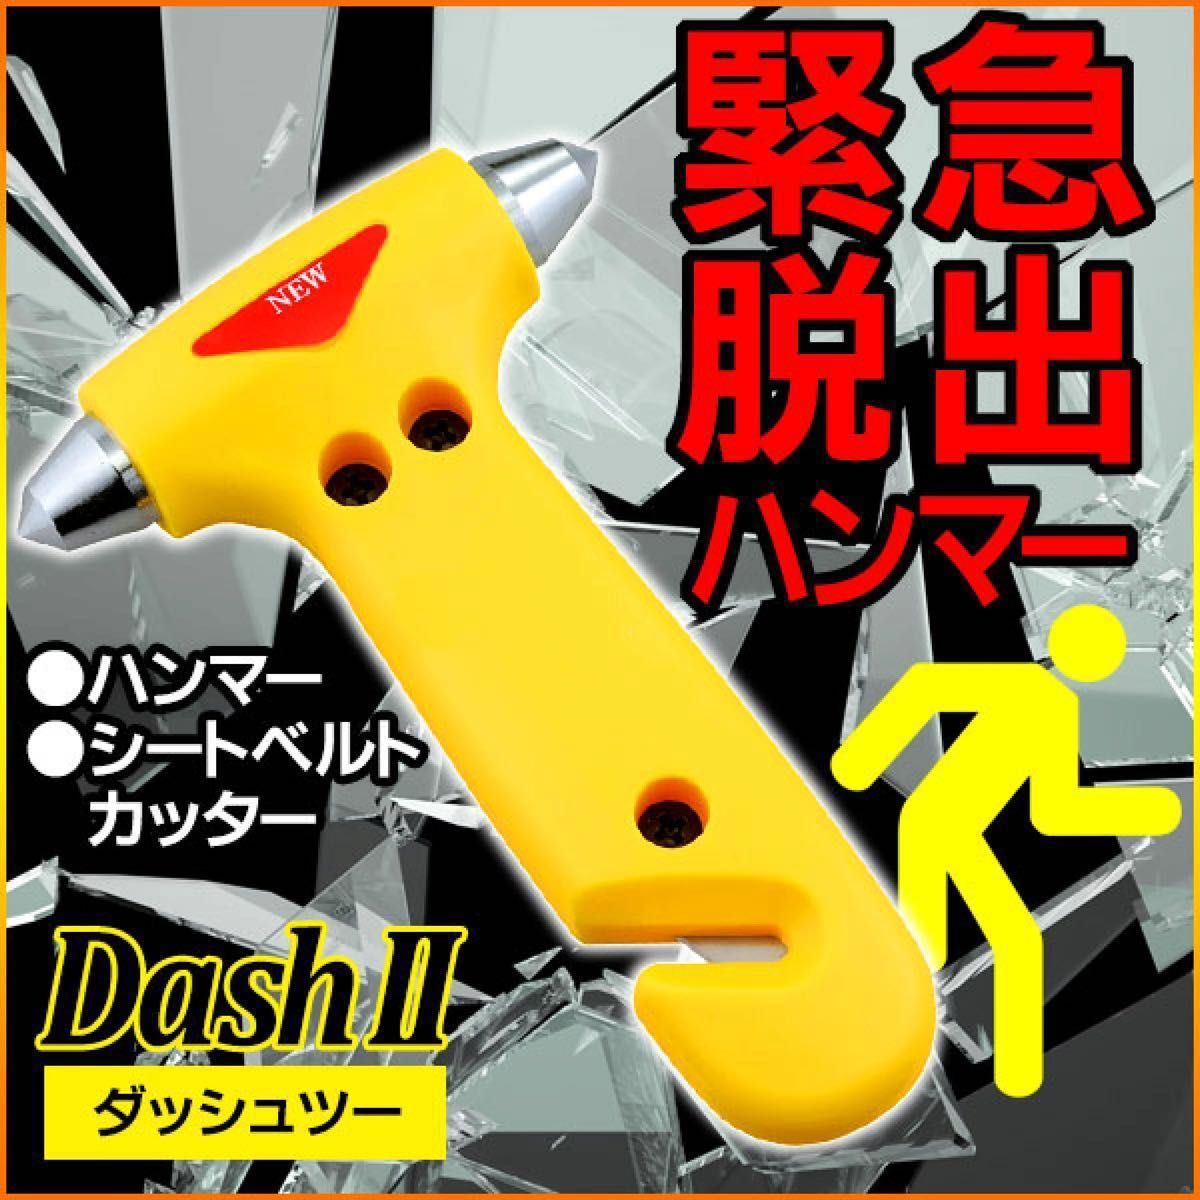 ［新品未使用］カクセー DASH II 緊急脱出用ハンマー